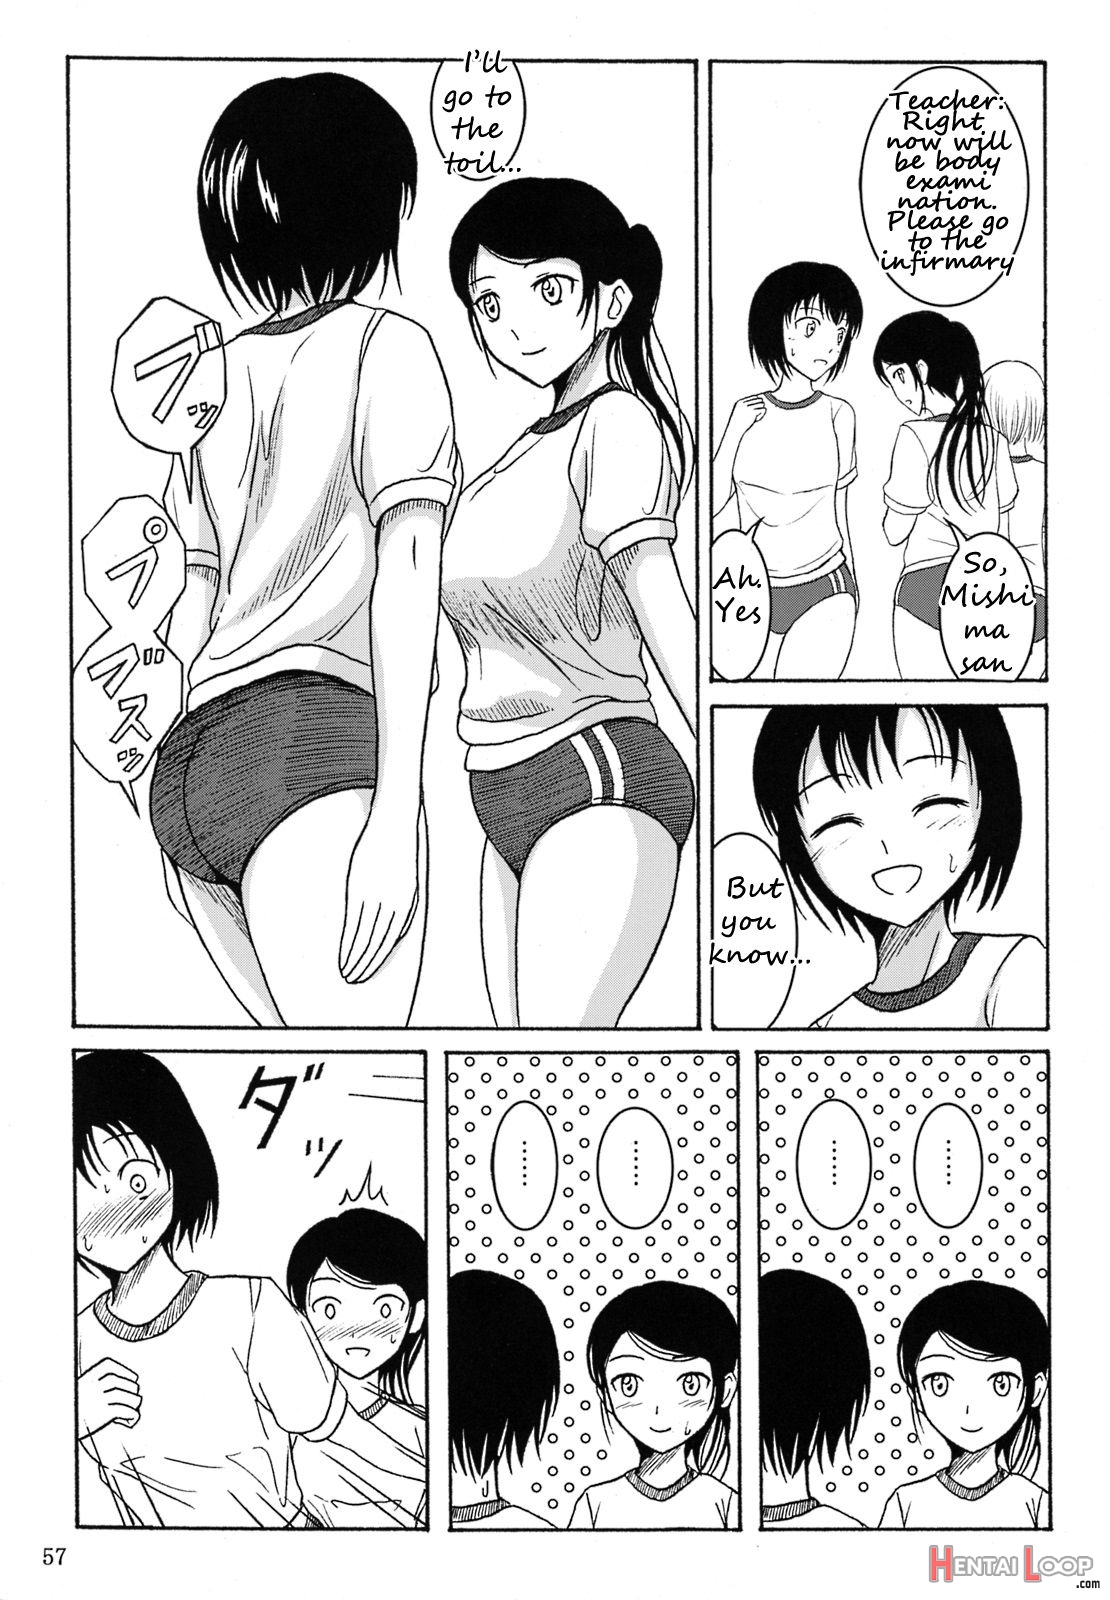 Haisetsu Shoujo 3 page 6